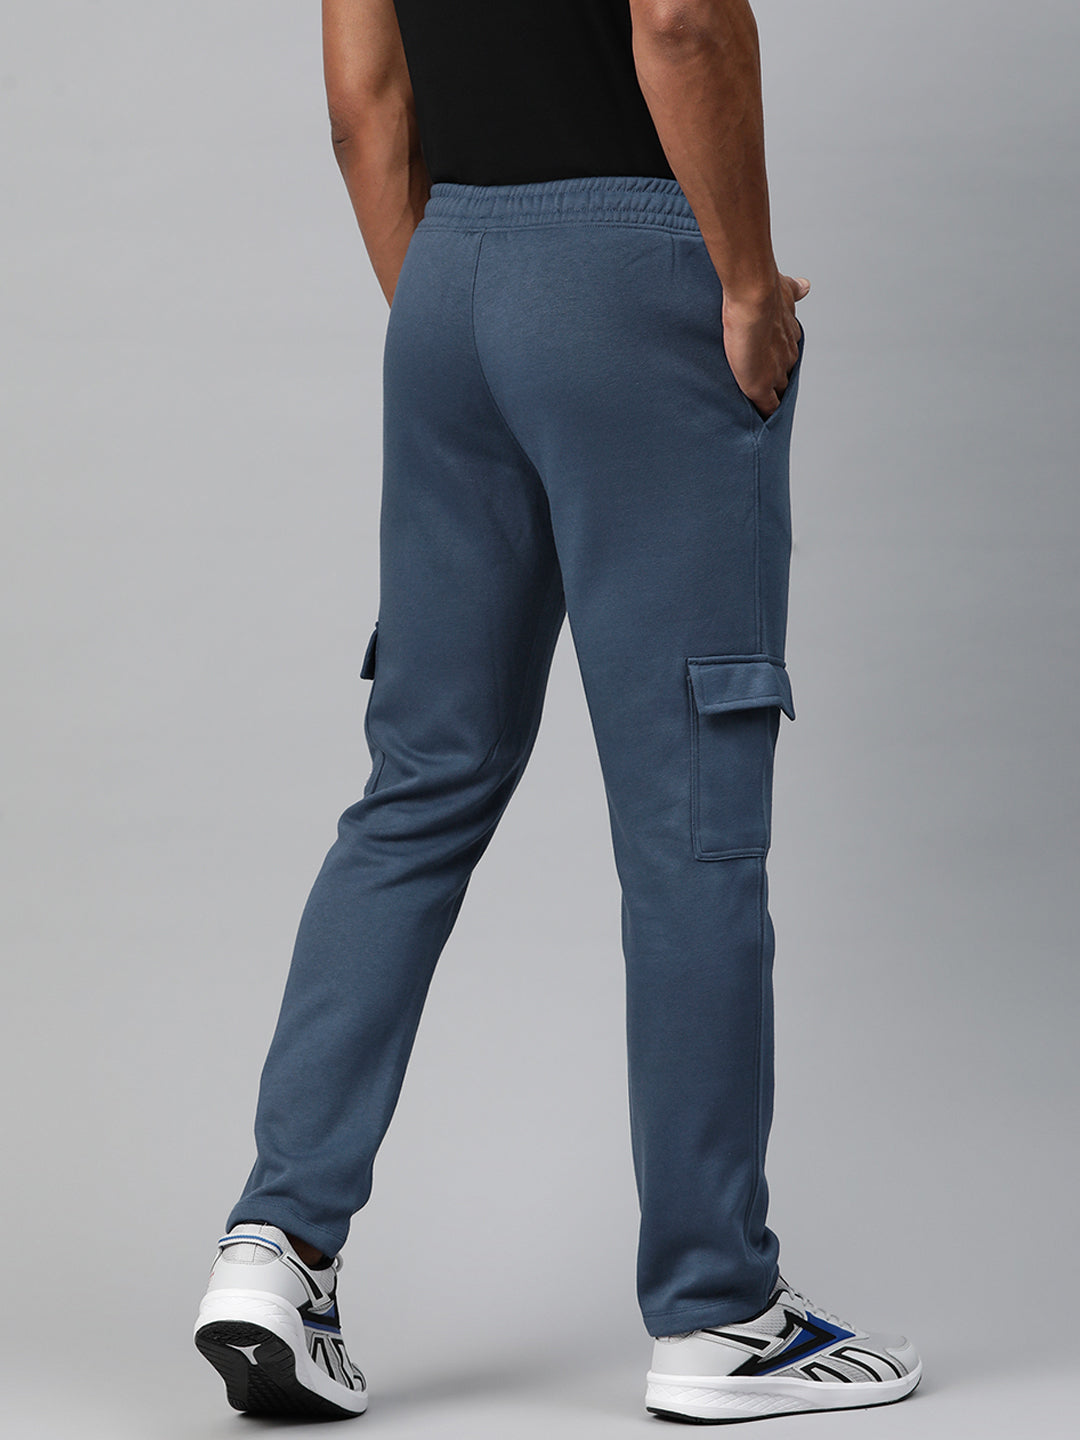 Buy Latest Beige Cargo Pants for Men Online in India